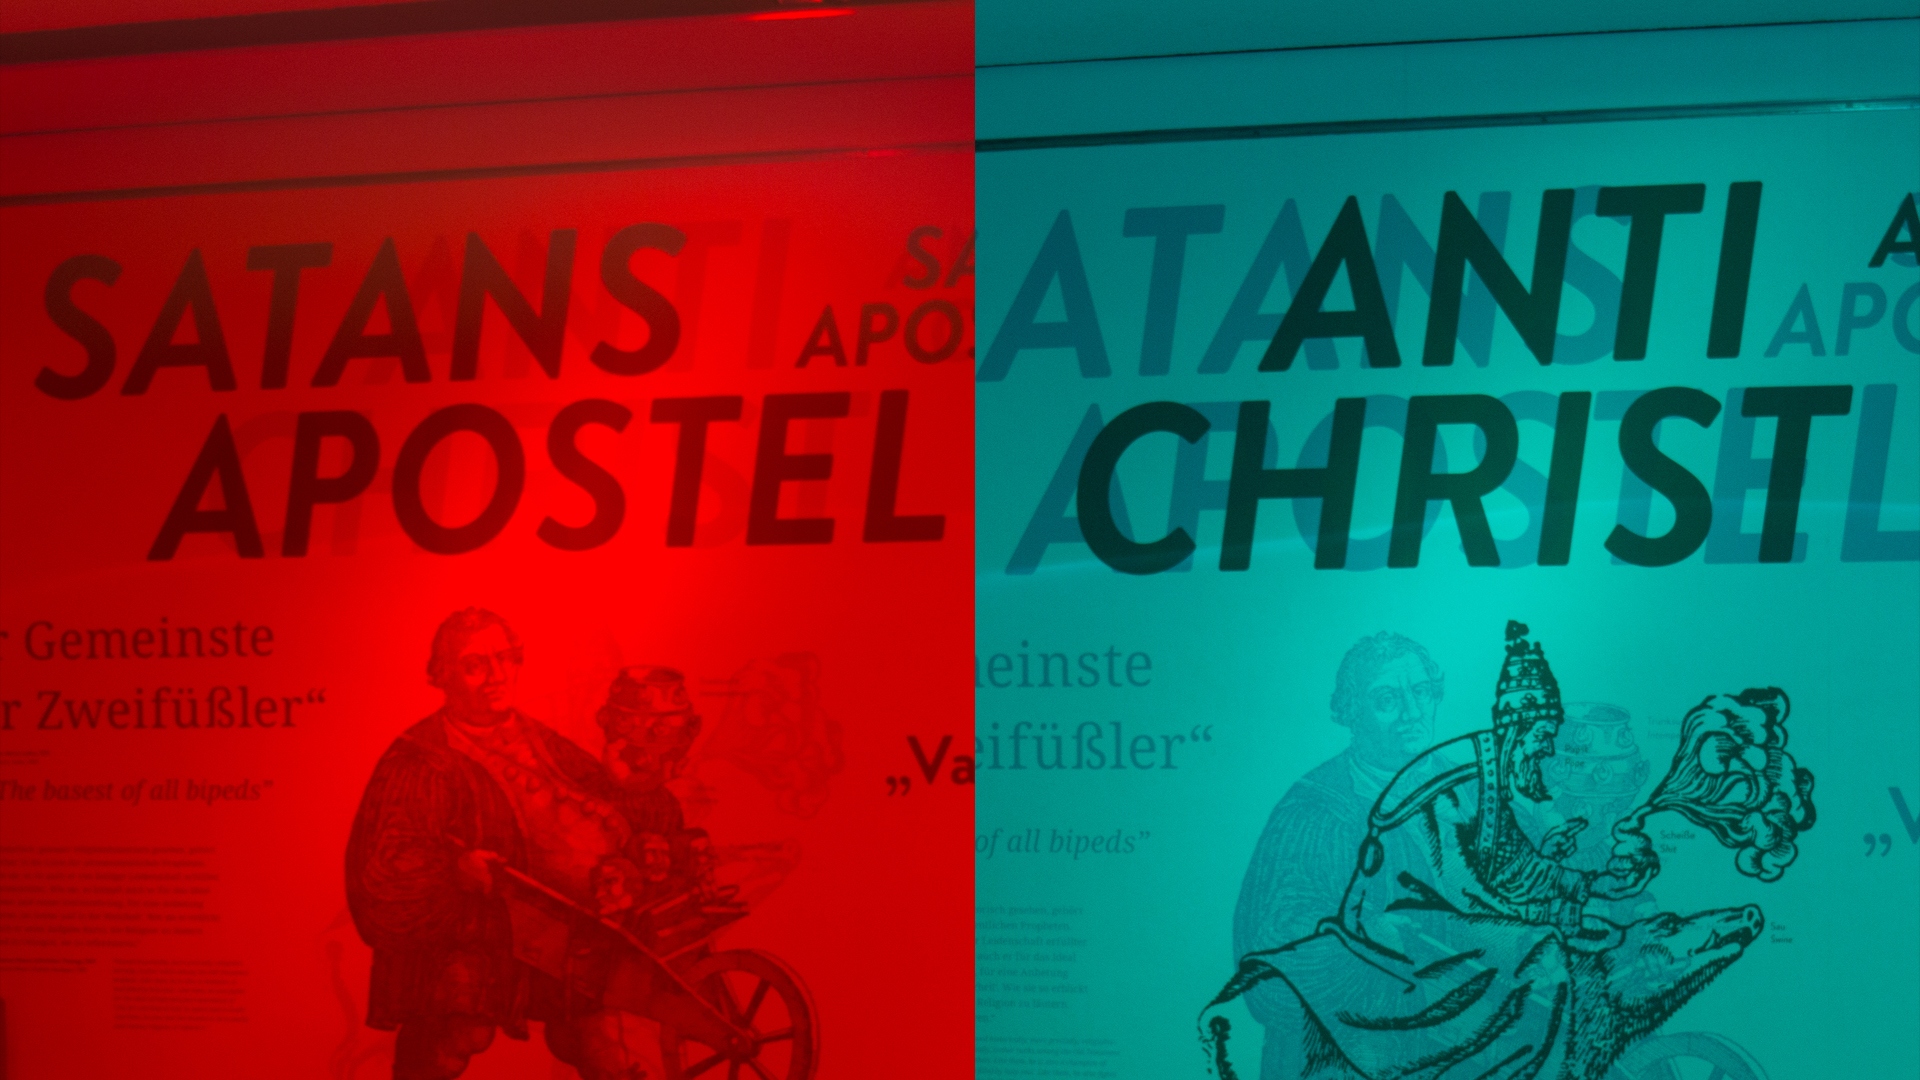 Die gleiche Wand mit unterschiedlichen Inhalte: Der rote Teil der Brille zeigt die katholische Sicht, der blaue Teil die evangelische.